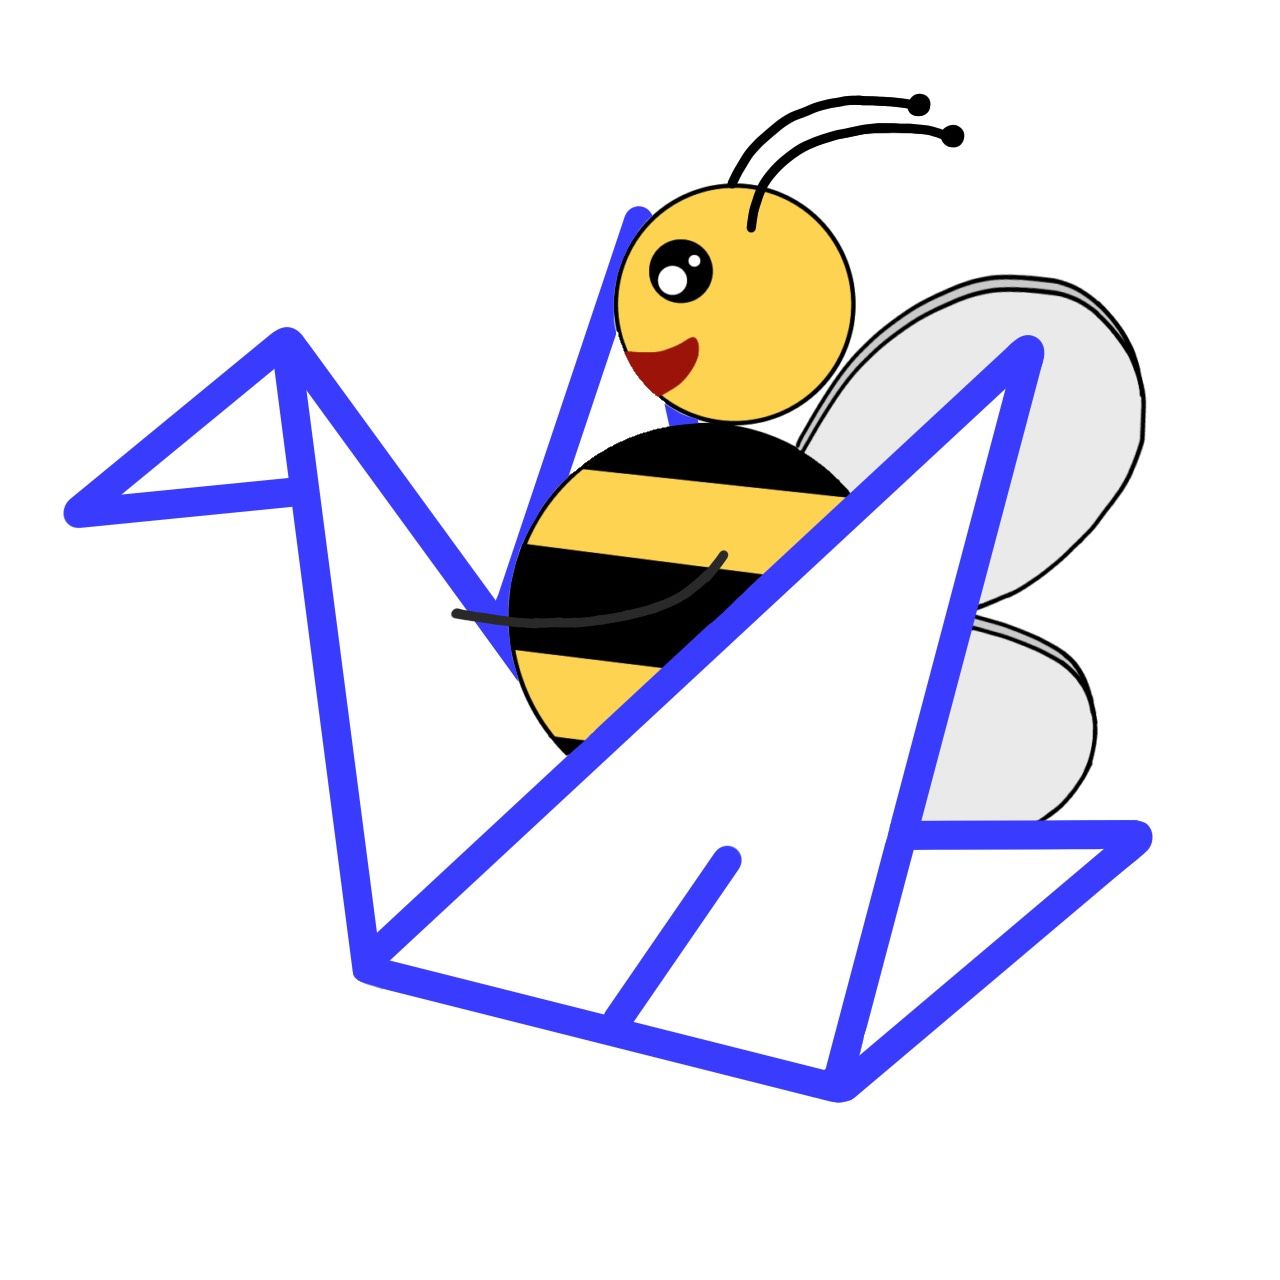 Bee riding the Manifold.markets logo